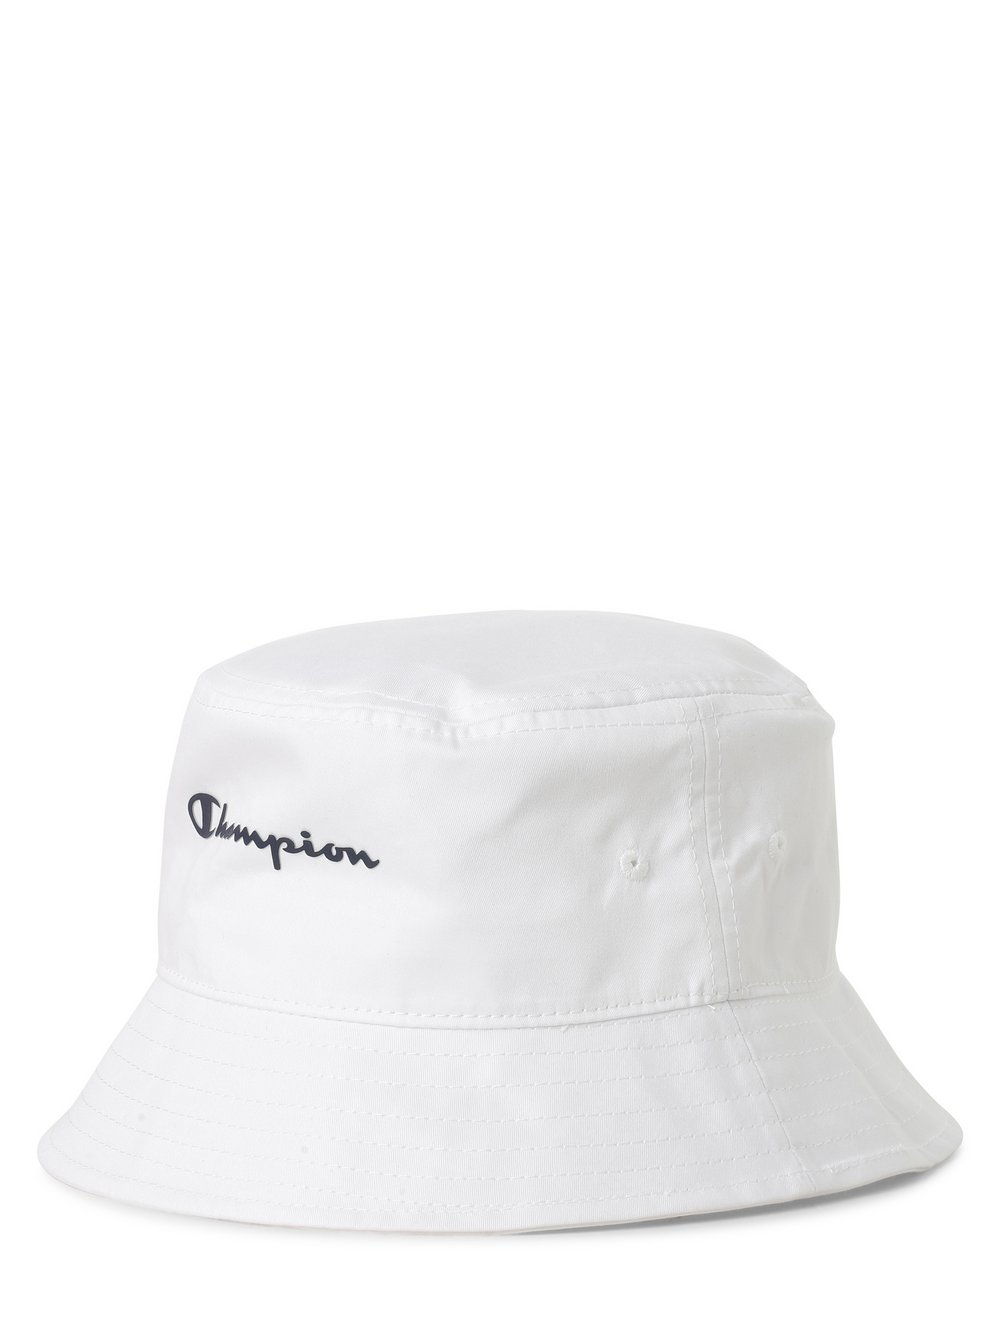 Champion - Damski bucket hat, biały